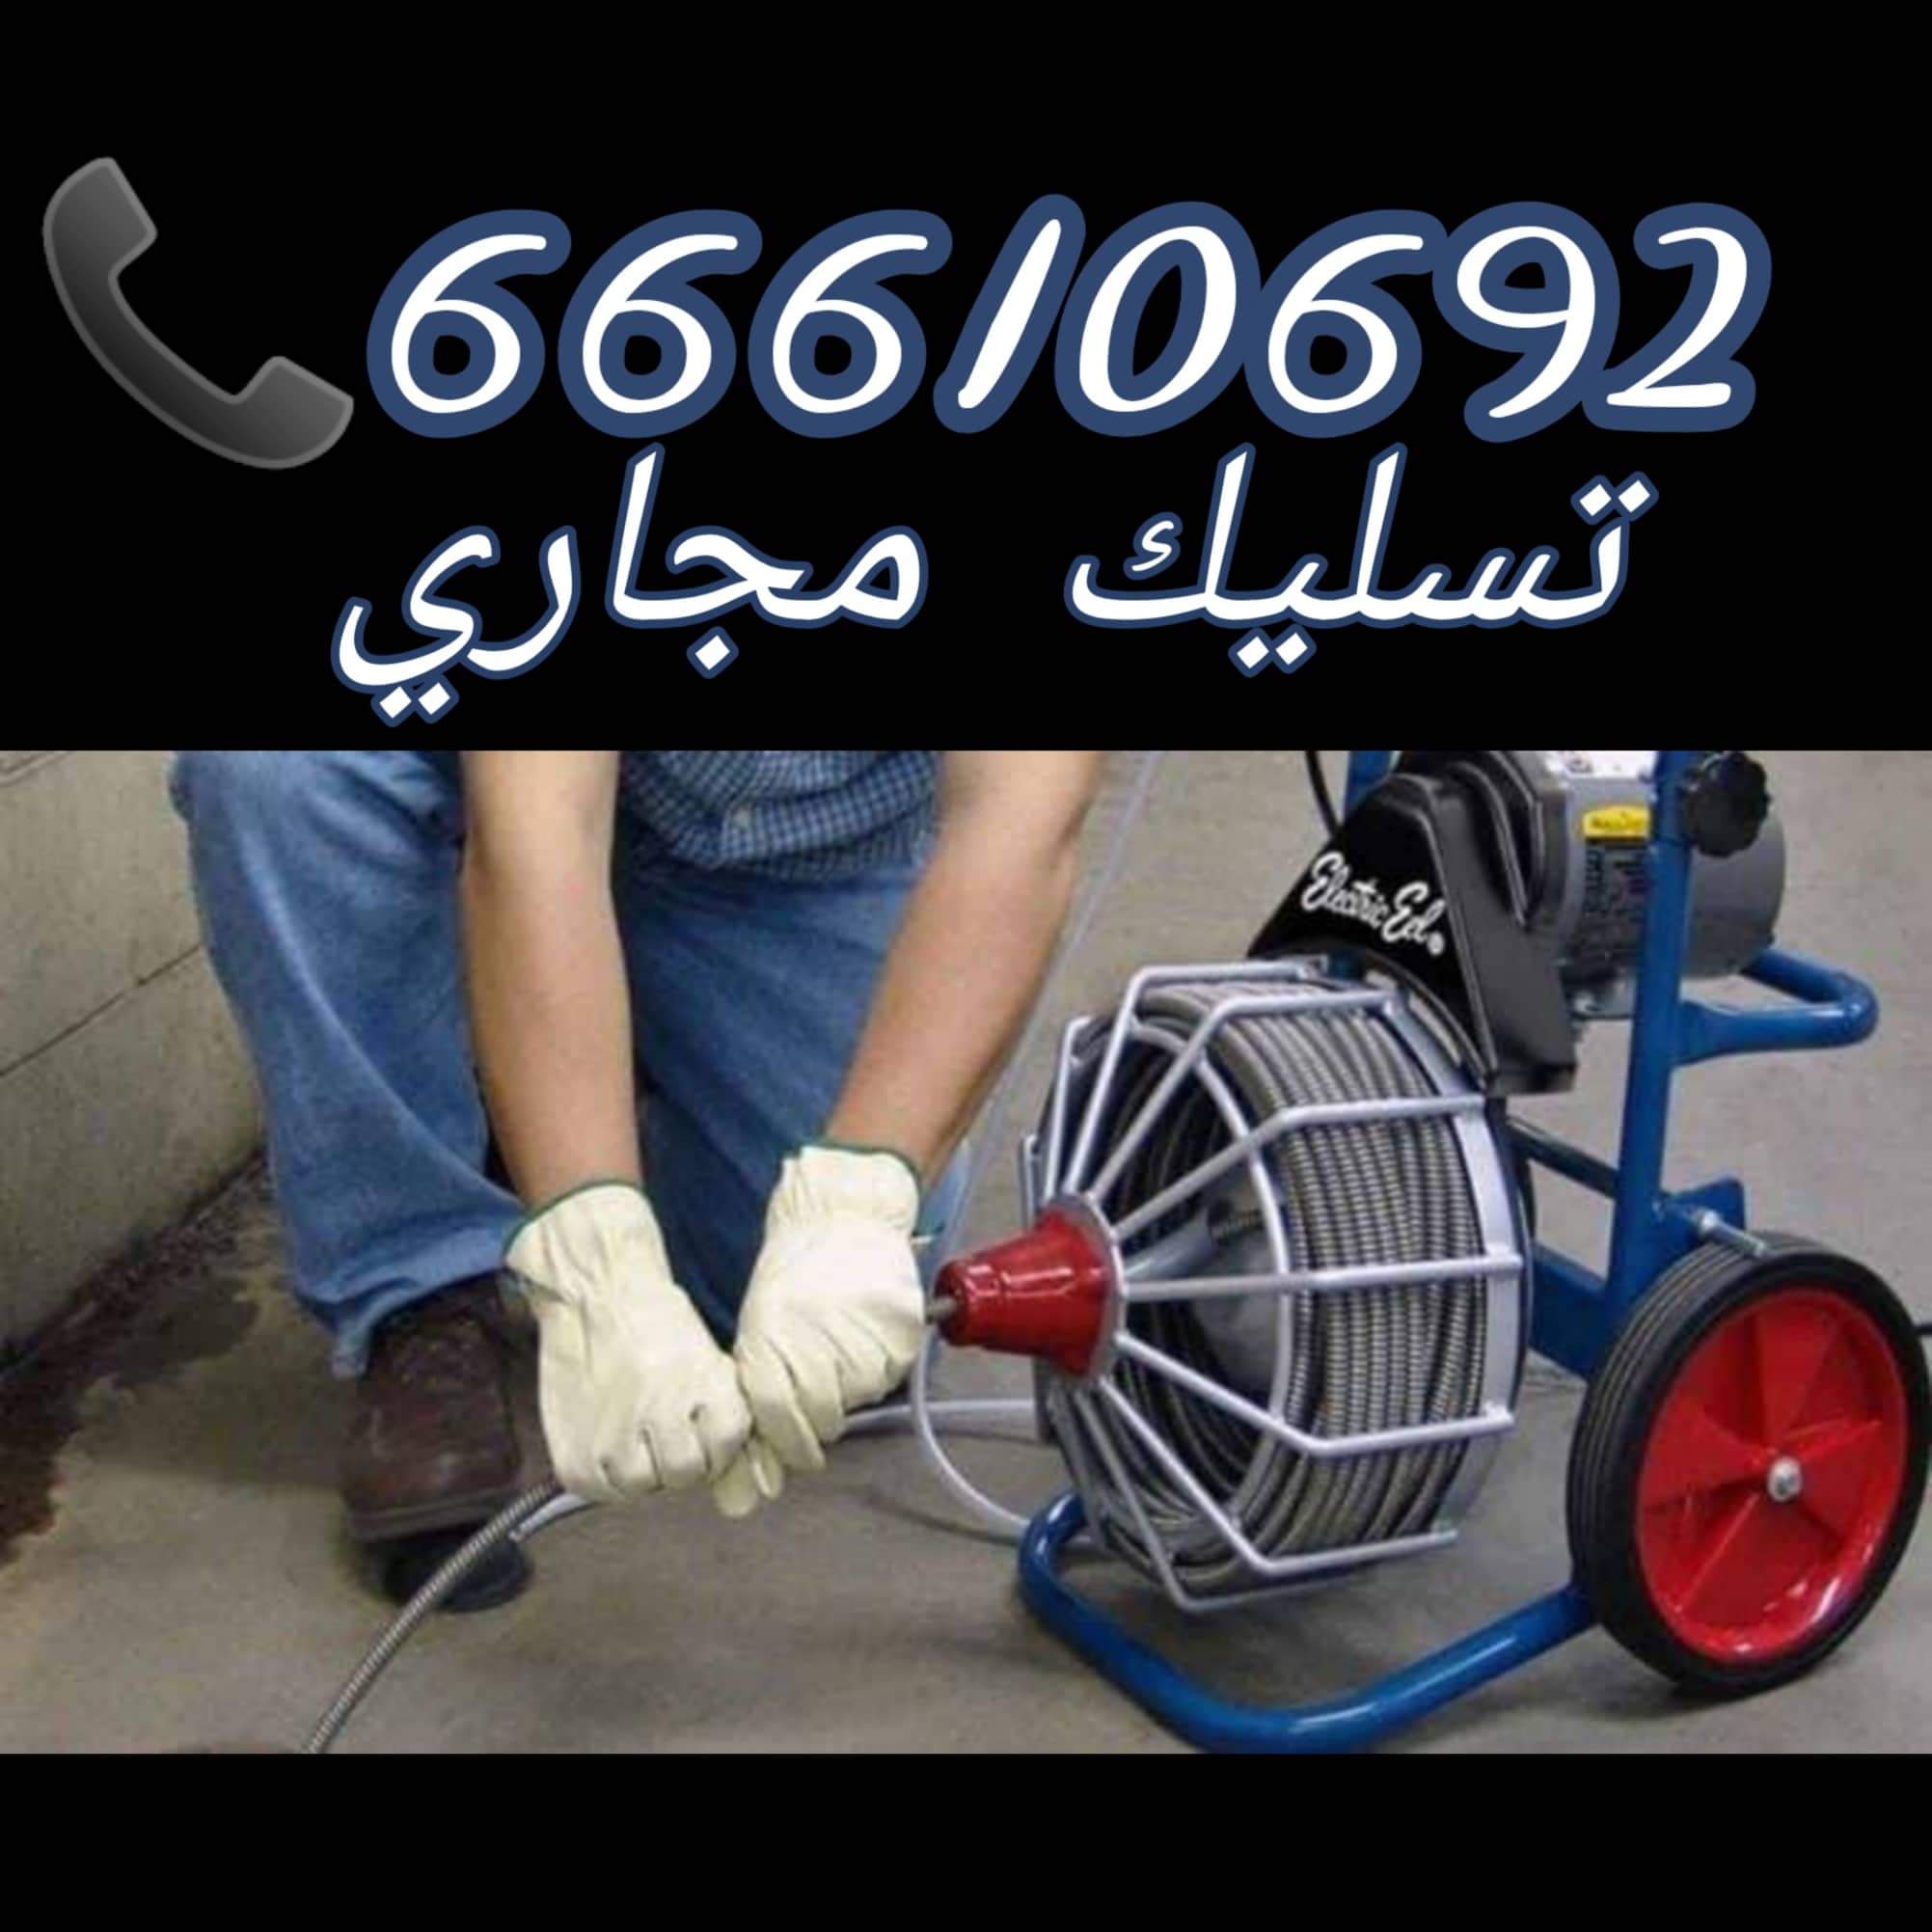 تسليك مجاري بنيدر / 66610692 / صيانة وتركيب ادوات صحية الكويت